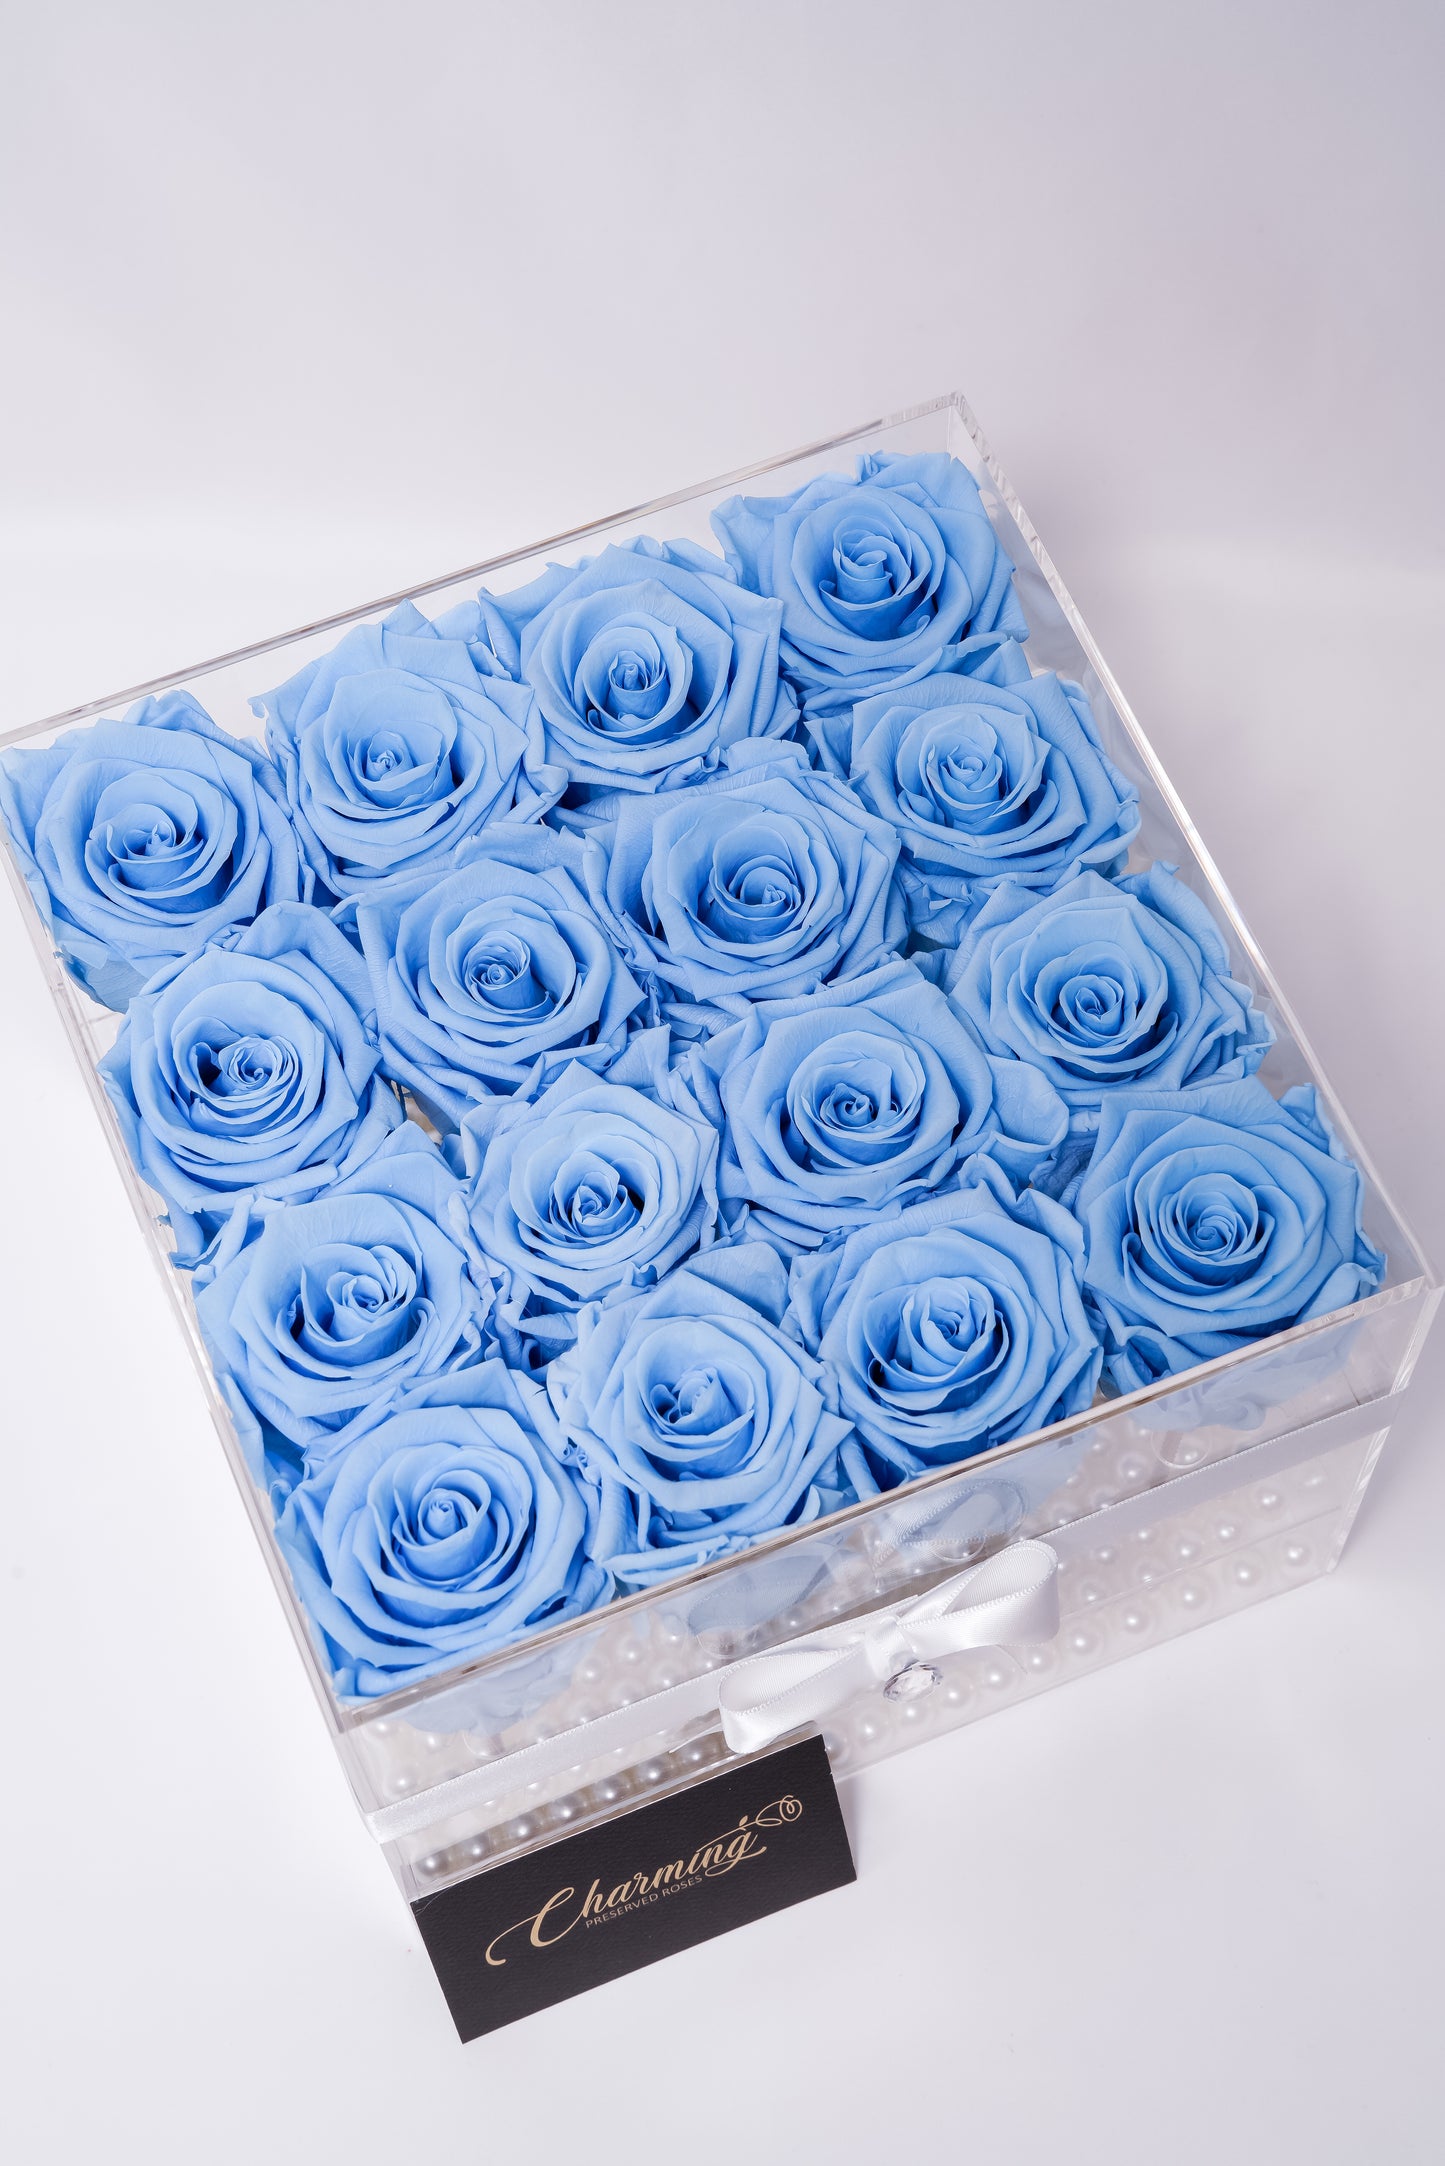 16 Rose Premium box with Stem